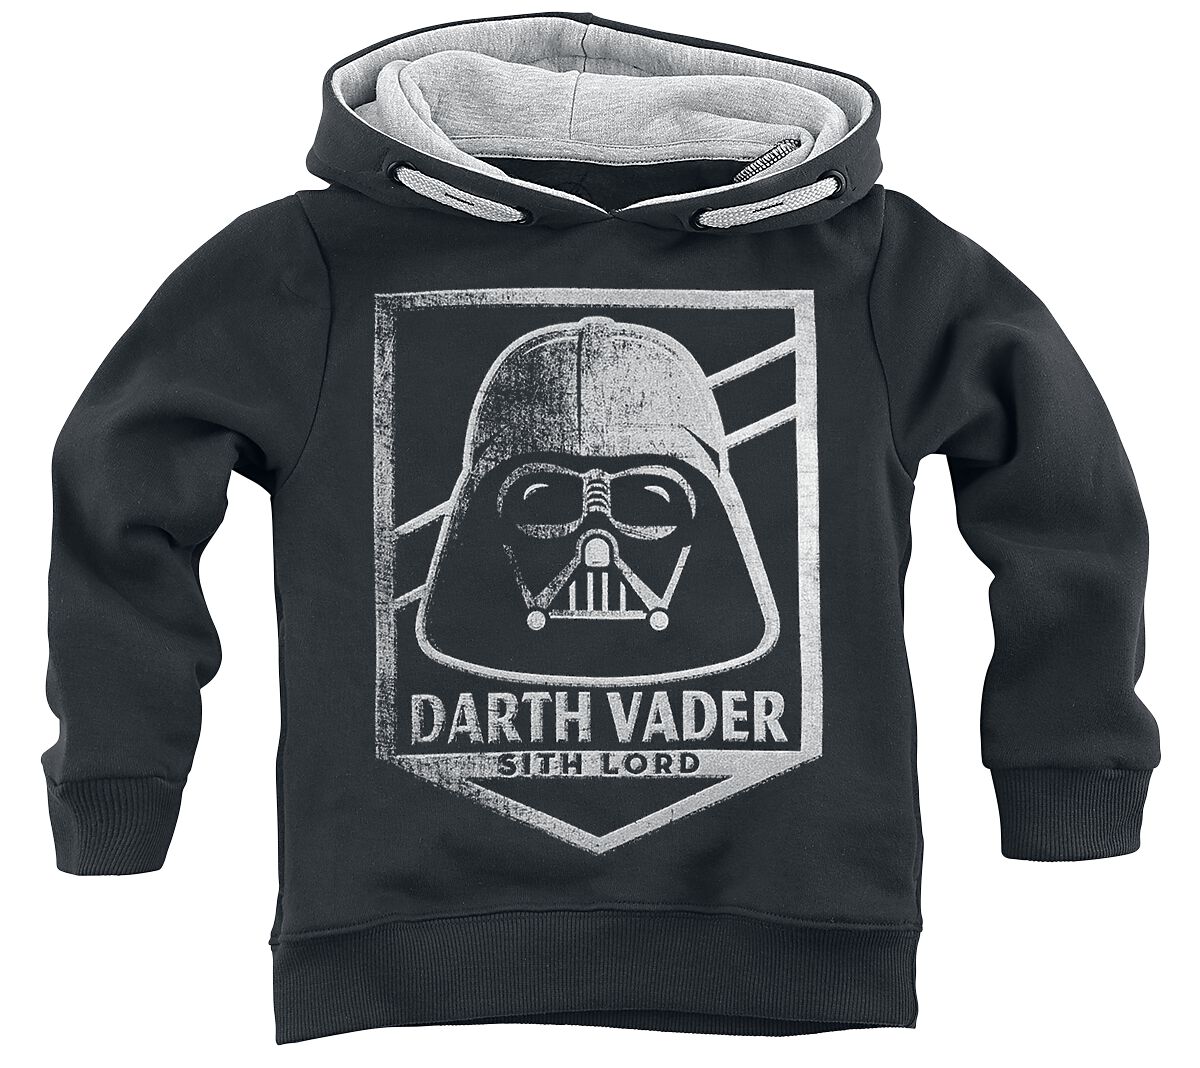 Star Wars Kapuzenpullover - Kids - Darth Vader - Sith Lord - 152 - Größe 152 - schwarz  - EMP exklusives Merchandise!